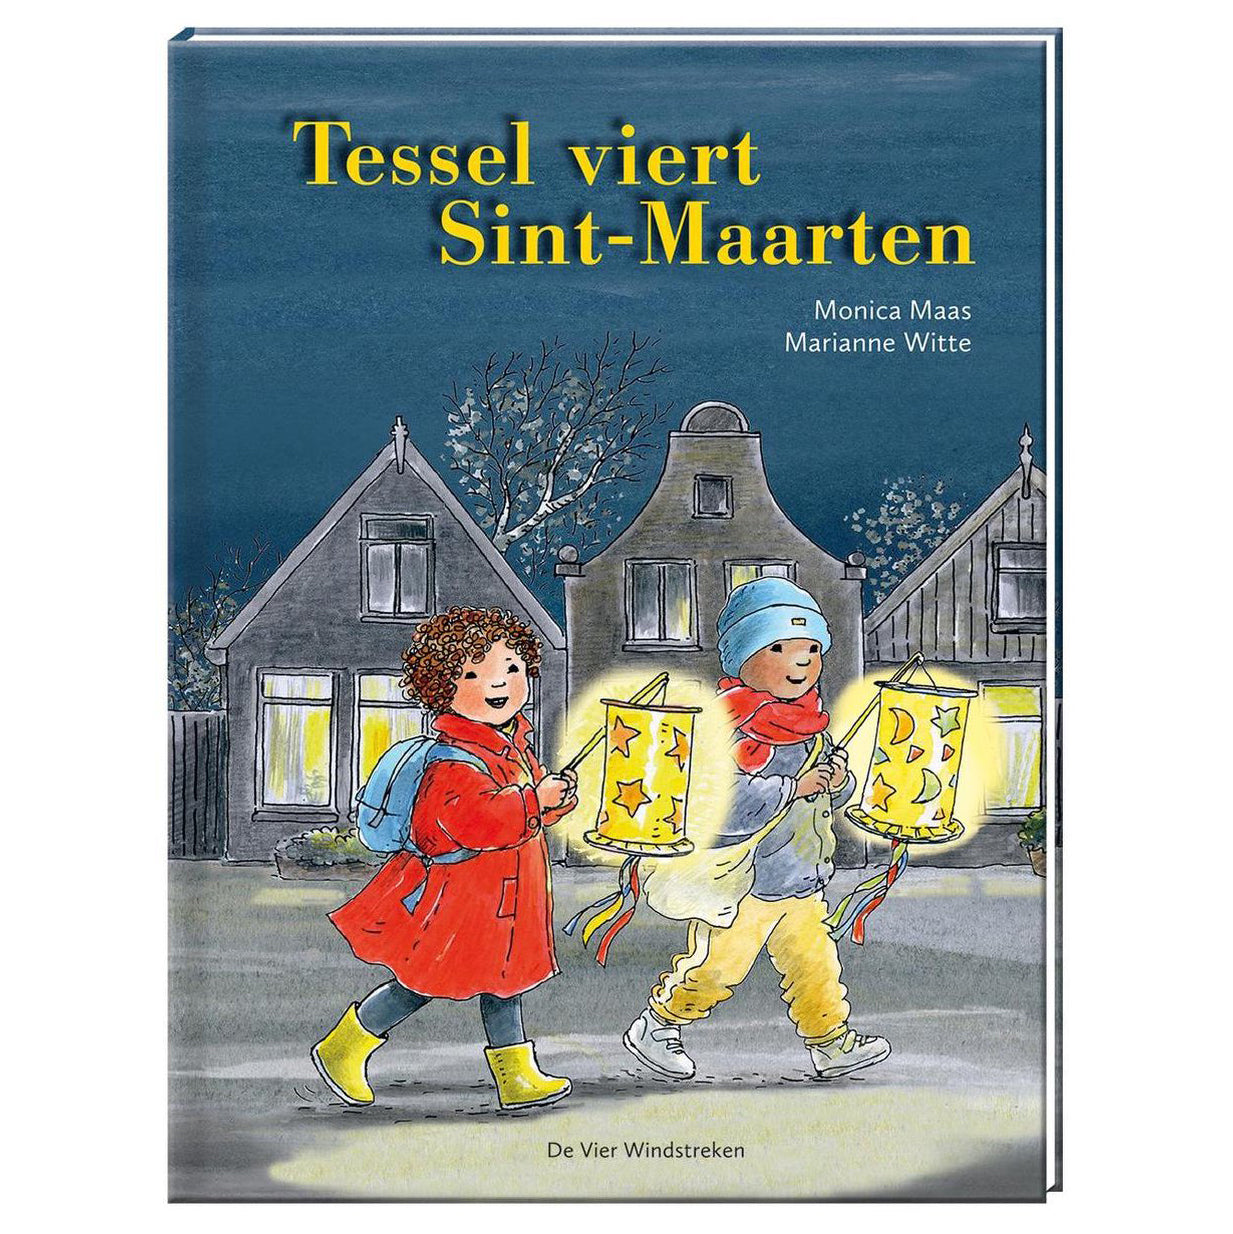 Tessel viert Sint-Maarten